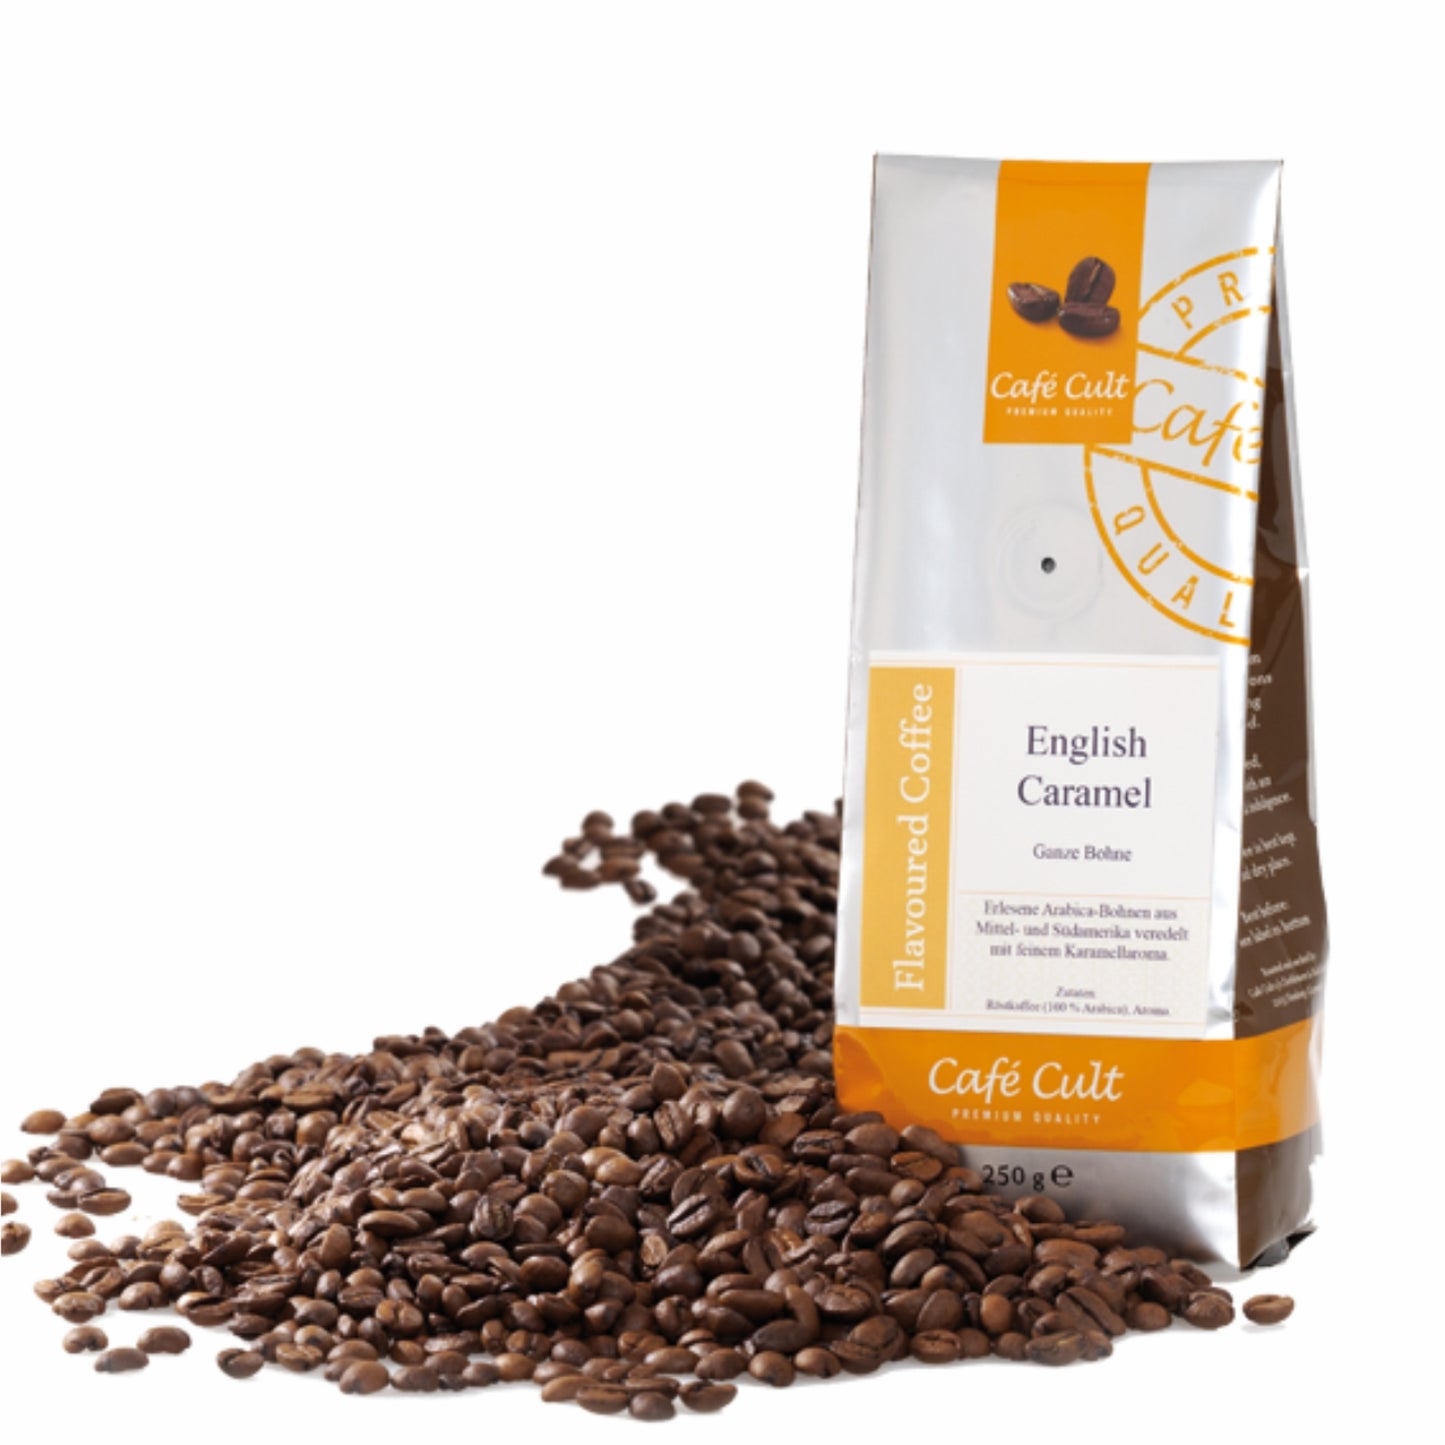 AROMATIZATA- Cafea boabe English Caramel 250 gr